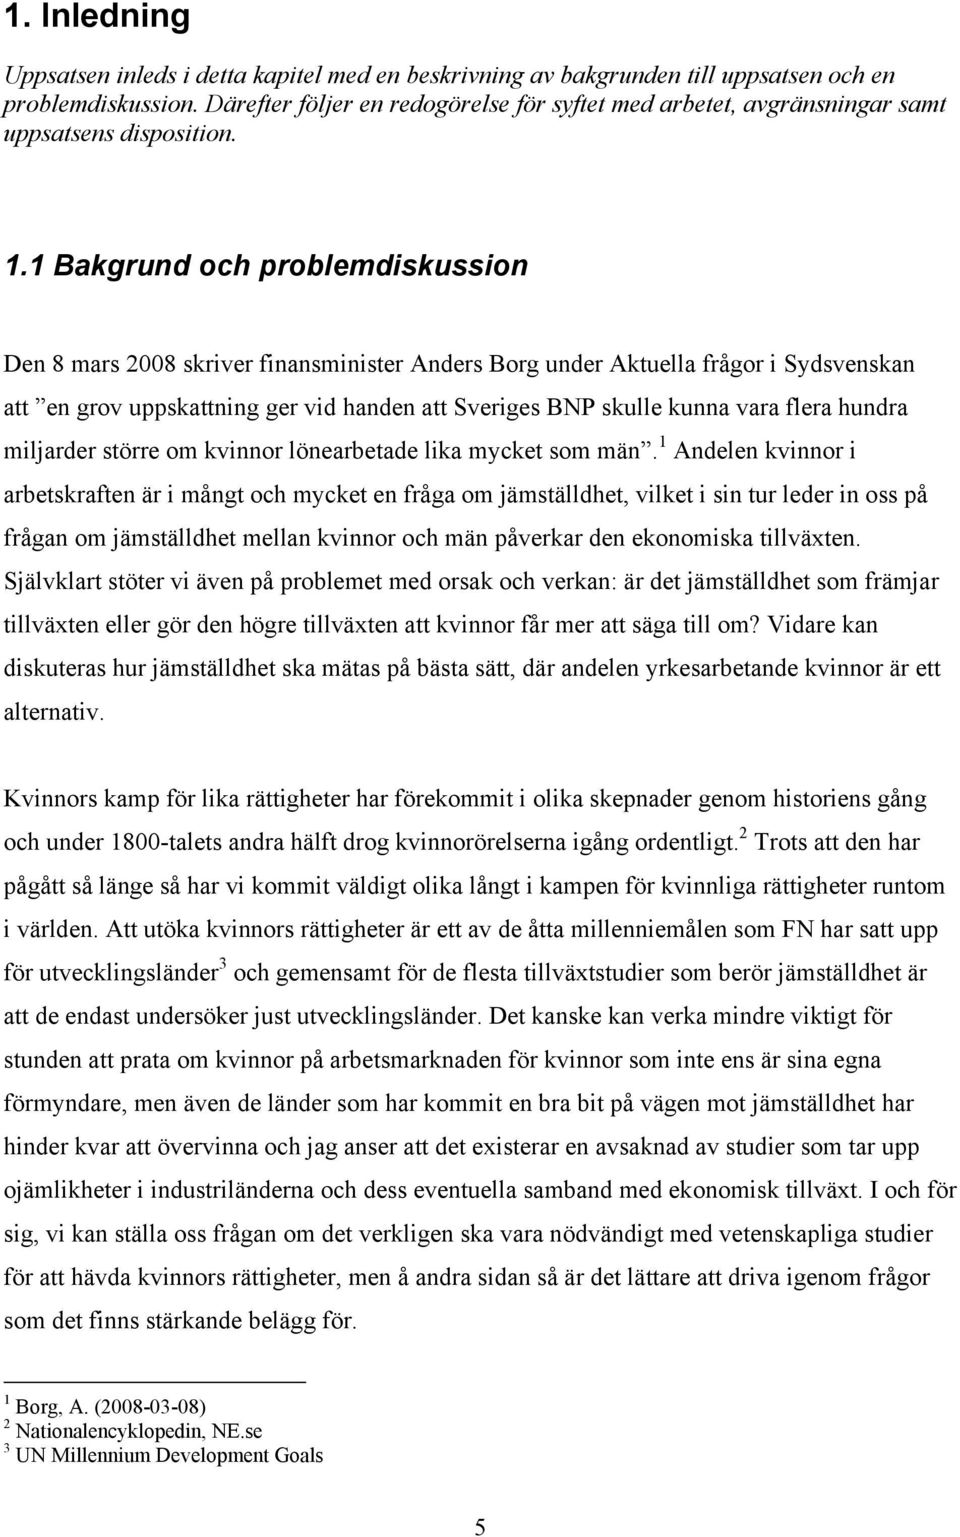 1 Bakgrund och problemdiskussion Den 8 mars 2008 skriver finansminiser Anders Borg under Akuella frågor i Sydsvenskan a en grov uppskaning ger vid handen a Sveriges BNP skulle kunna vara flera hundra